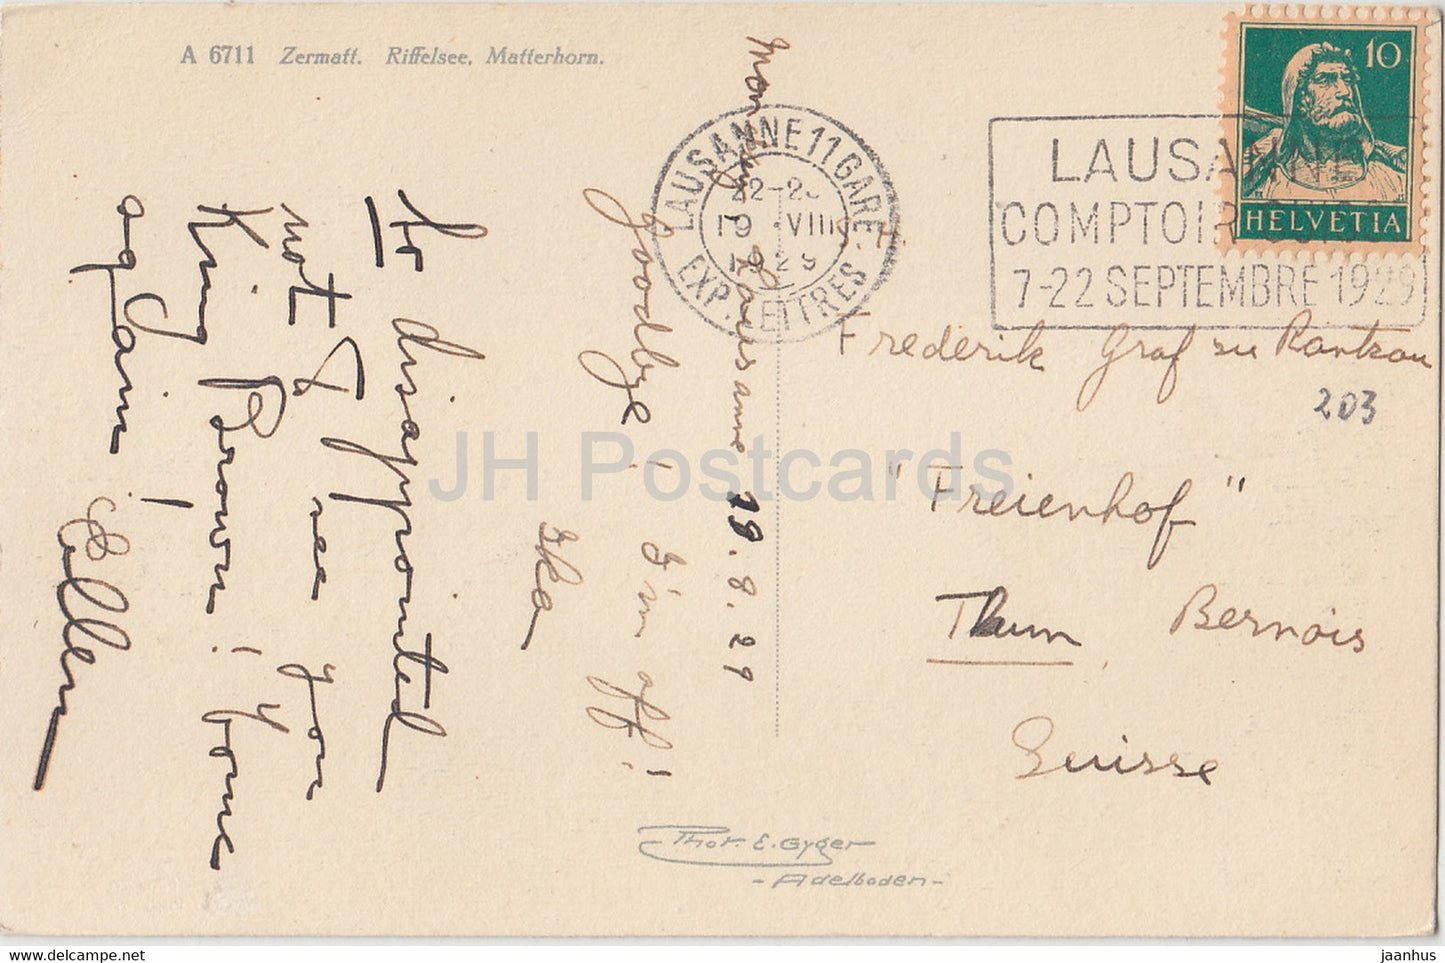 Zermatt - Riffelsee - Cervin - 6711 - carte postale ancienne - 1929 - Suisse - d'occasion